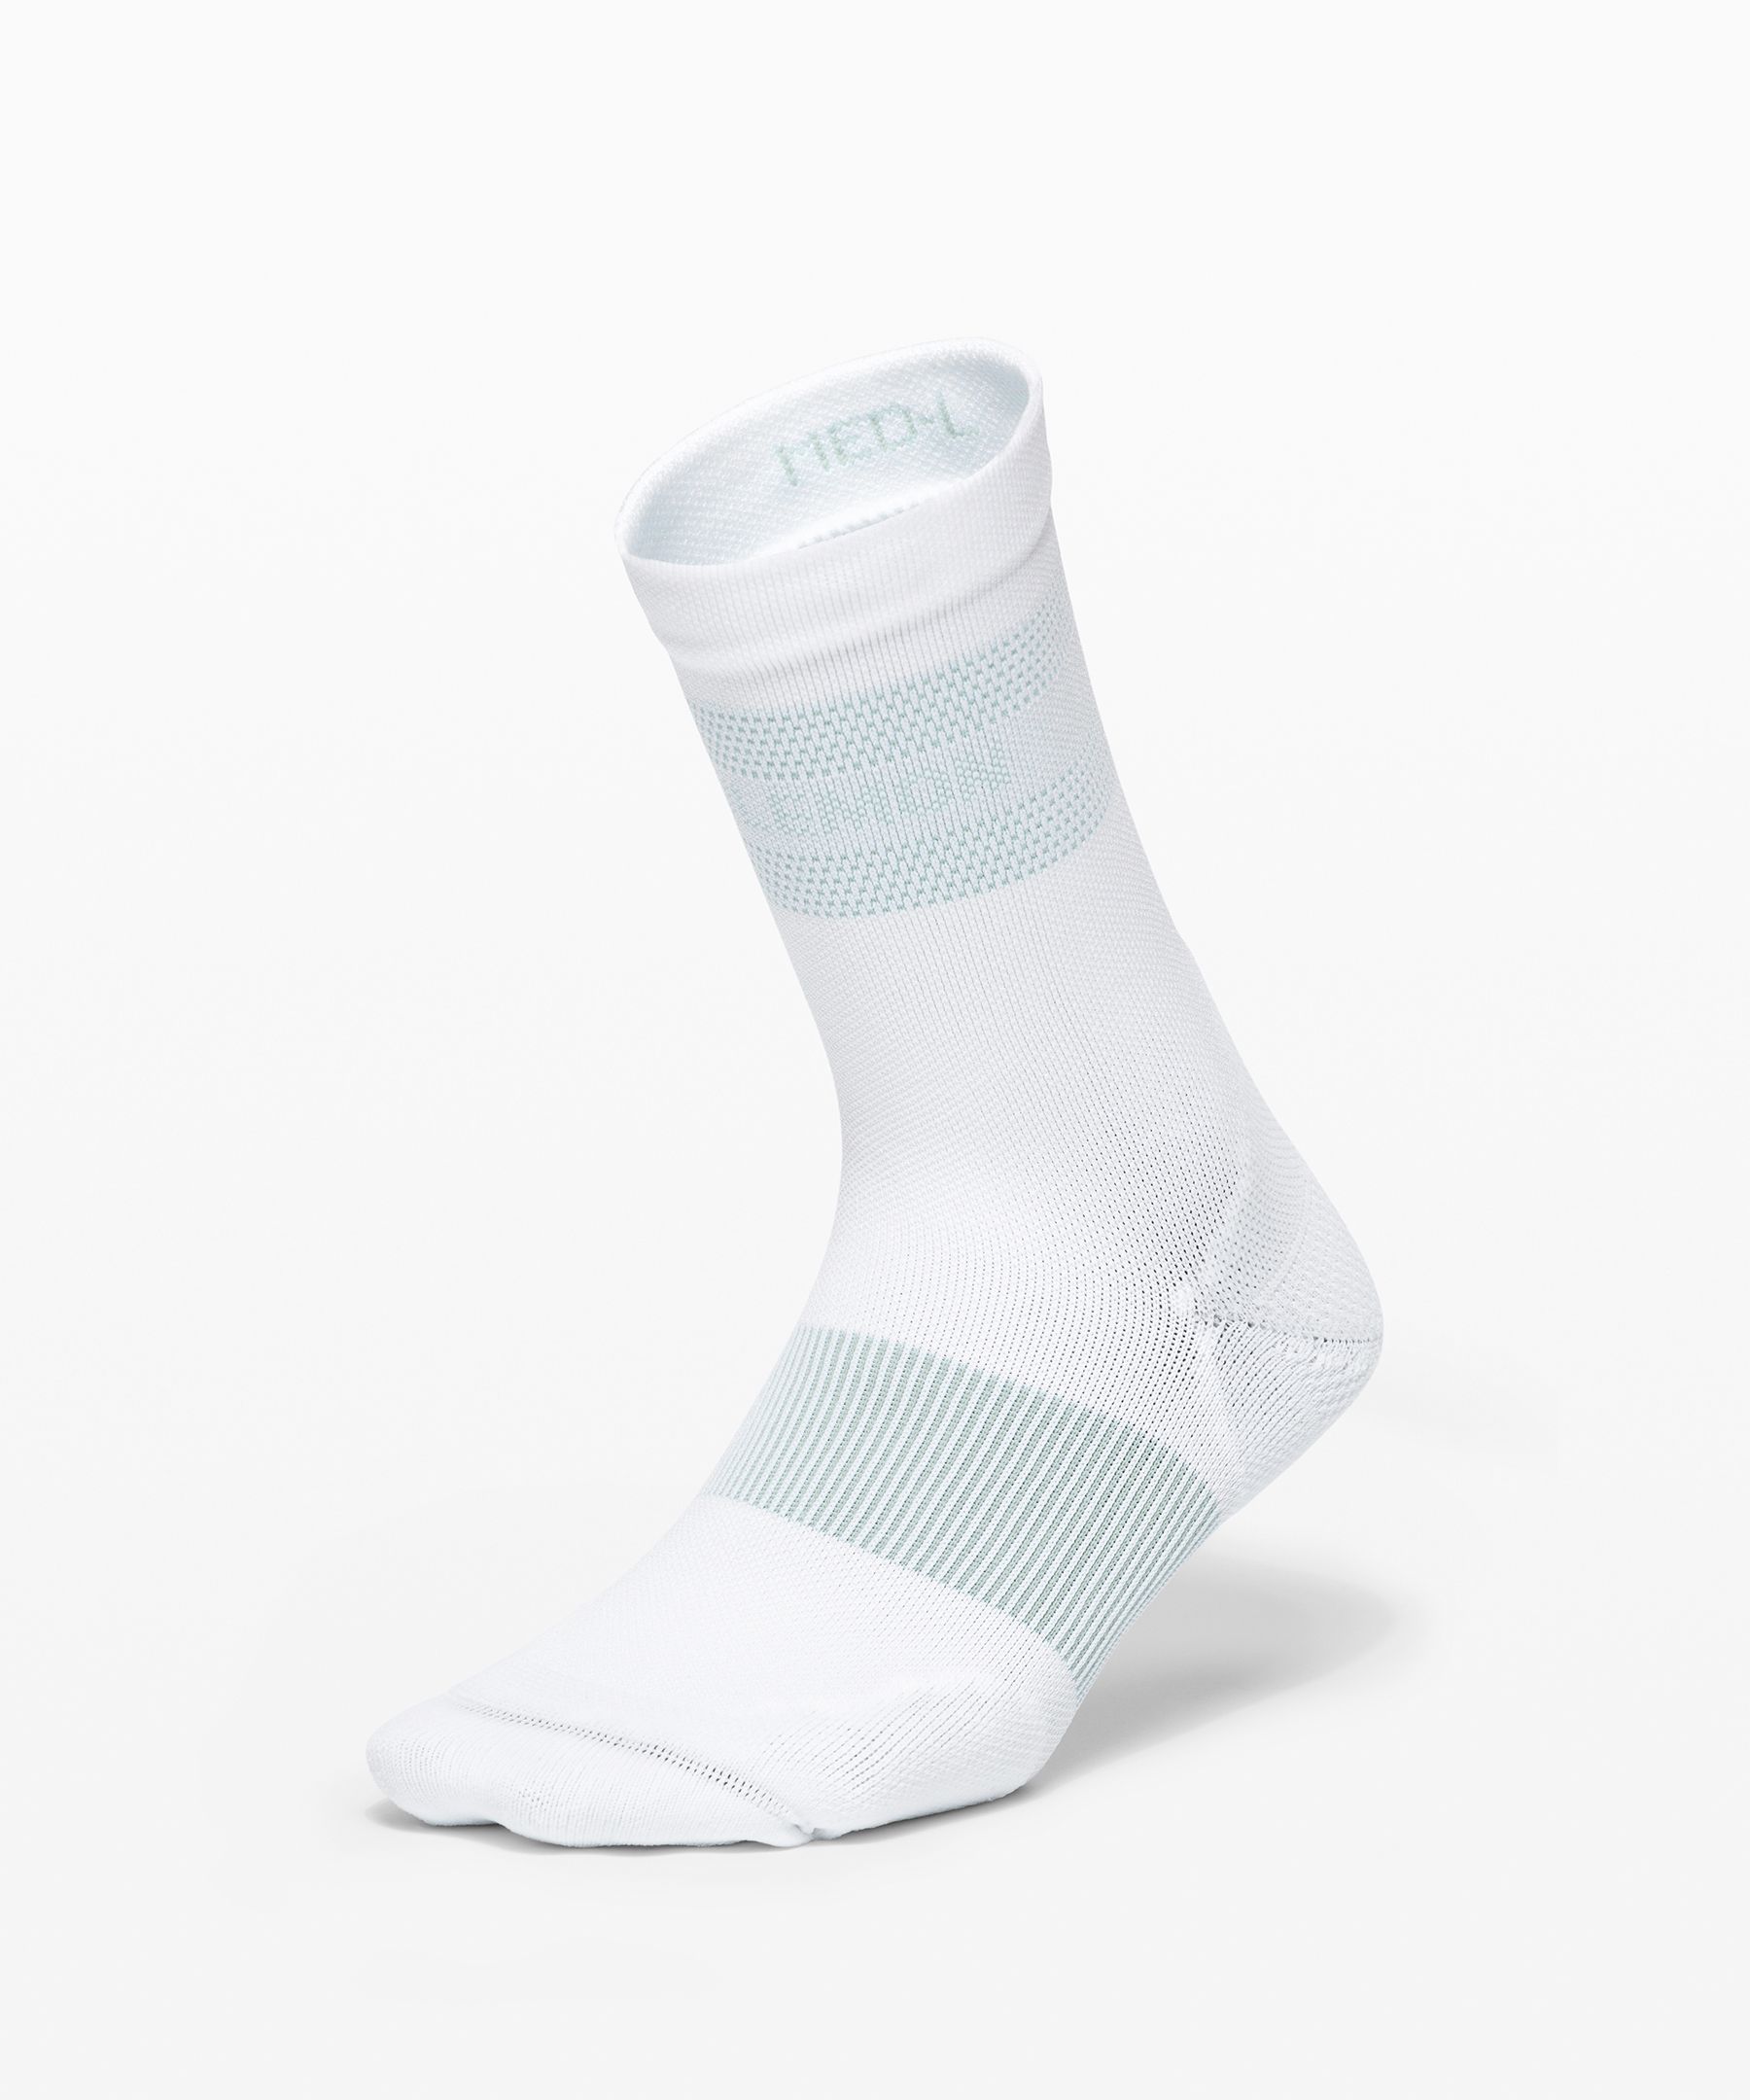 lululemon yoga socks